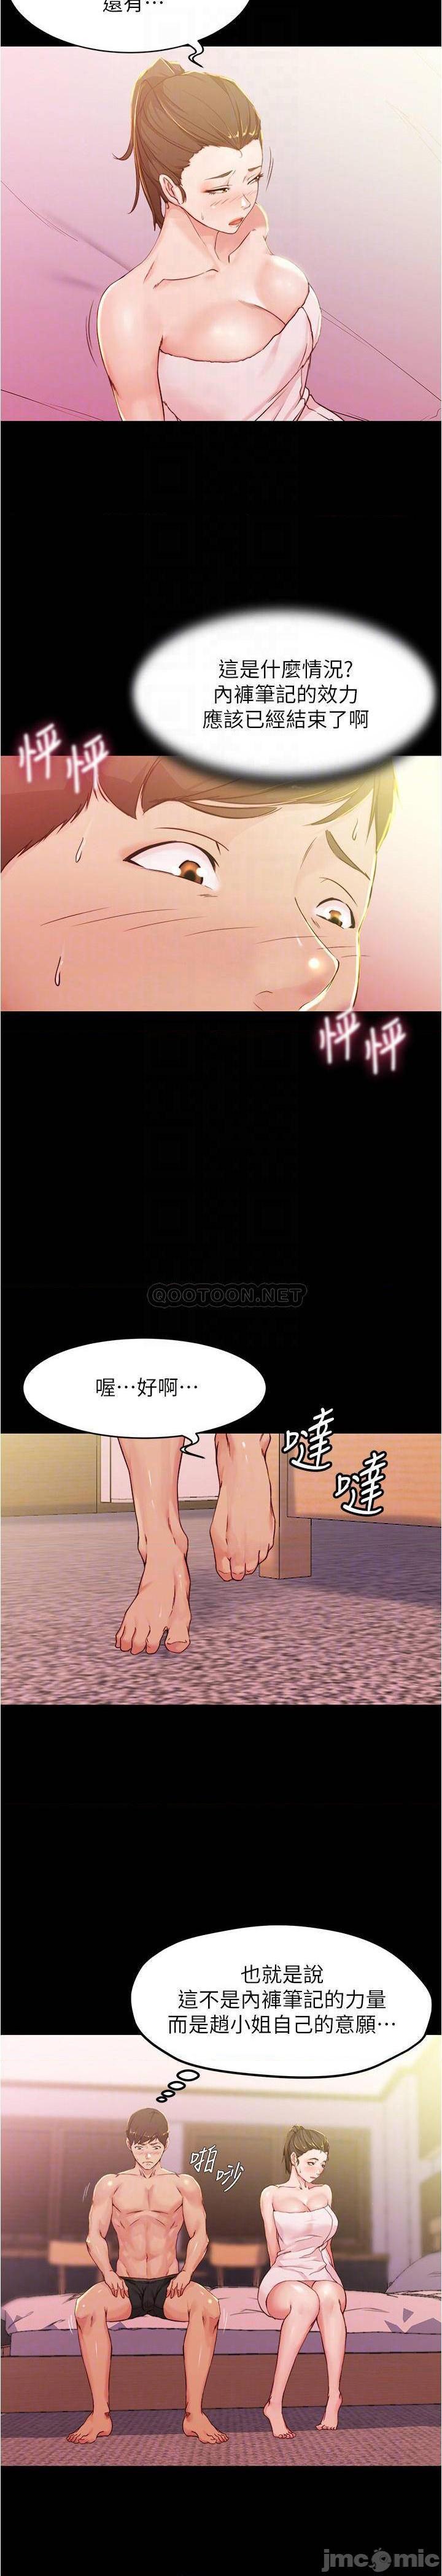 《小裤裤笔记》漫画 第27话 祕密被穗桦发现?